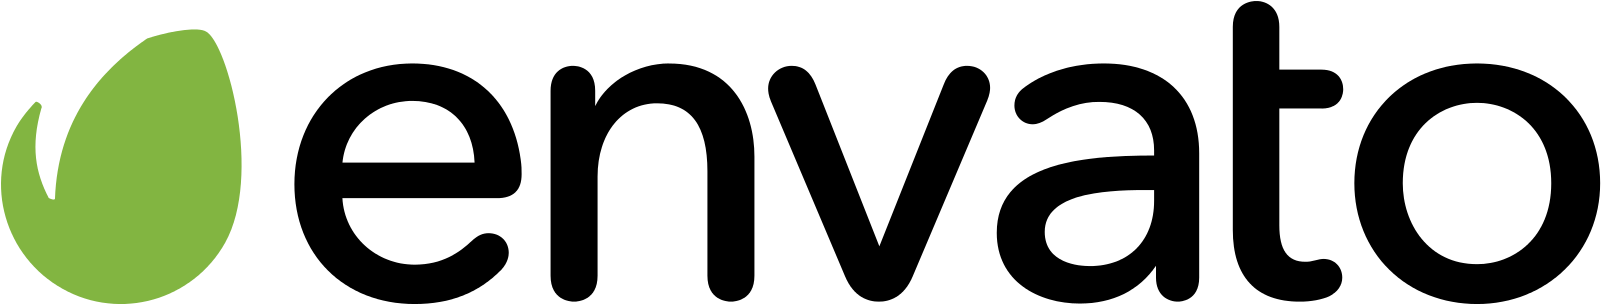 File:Envato Logo.svg, Envato Logo PNG - Free PNG